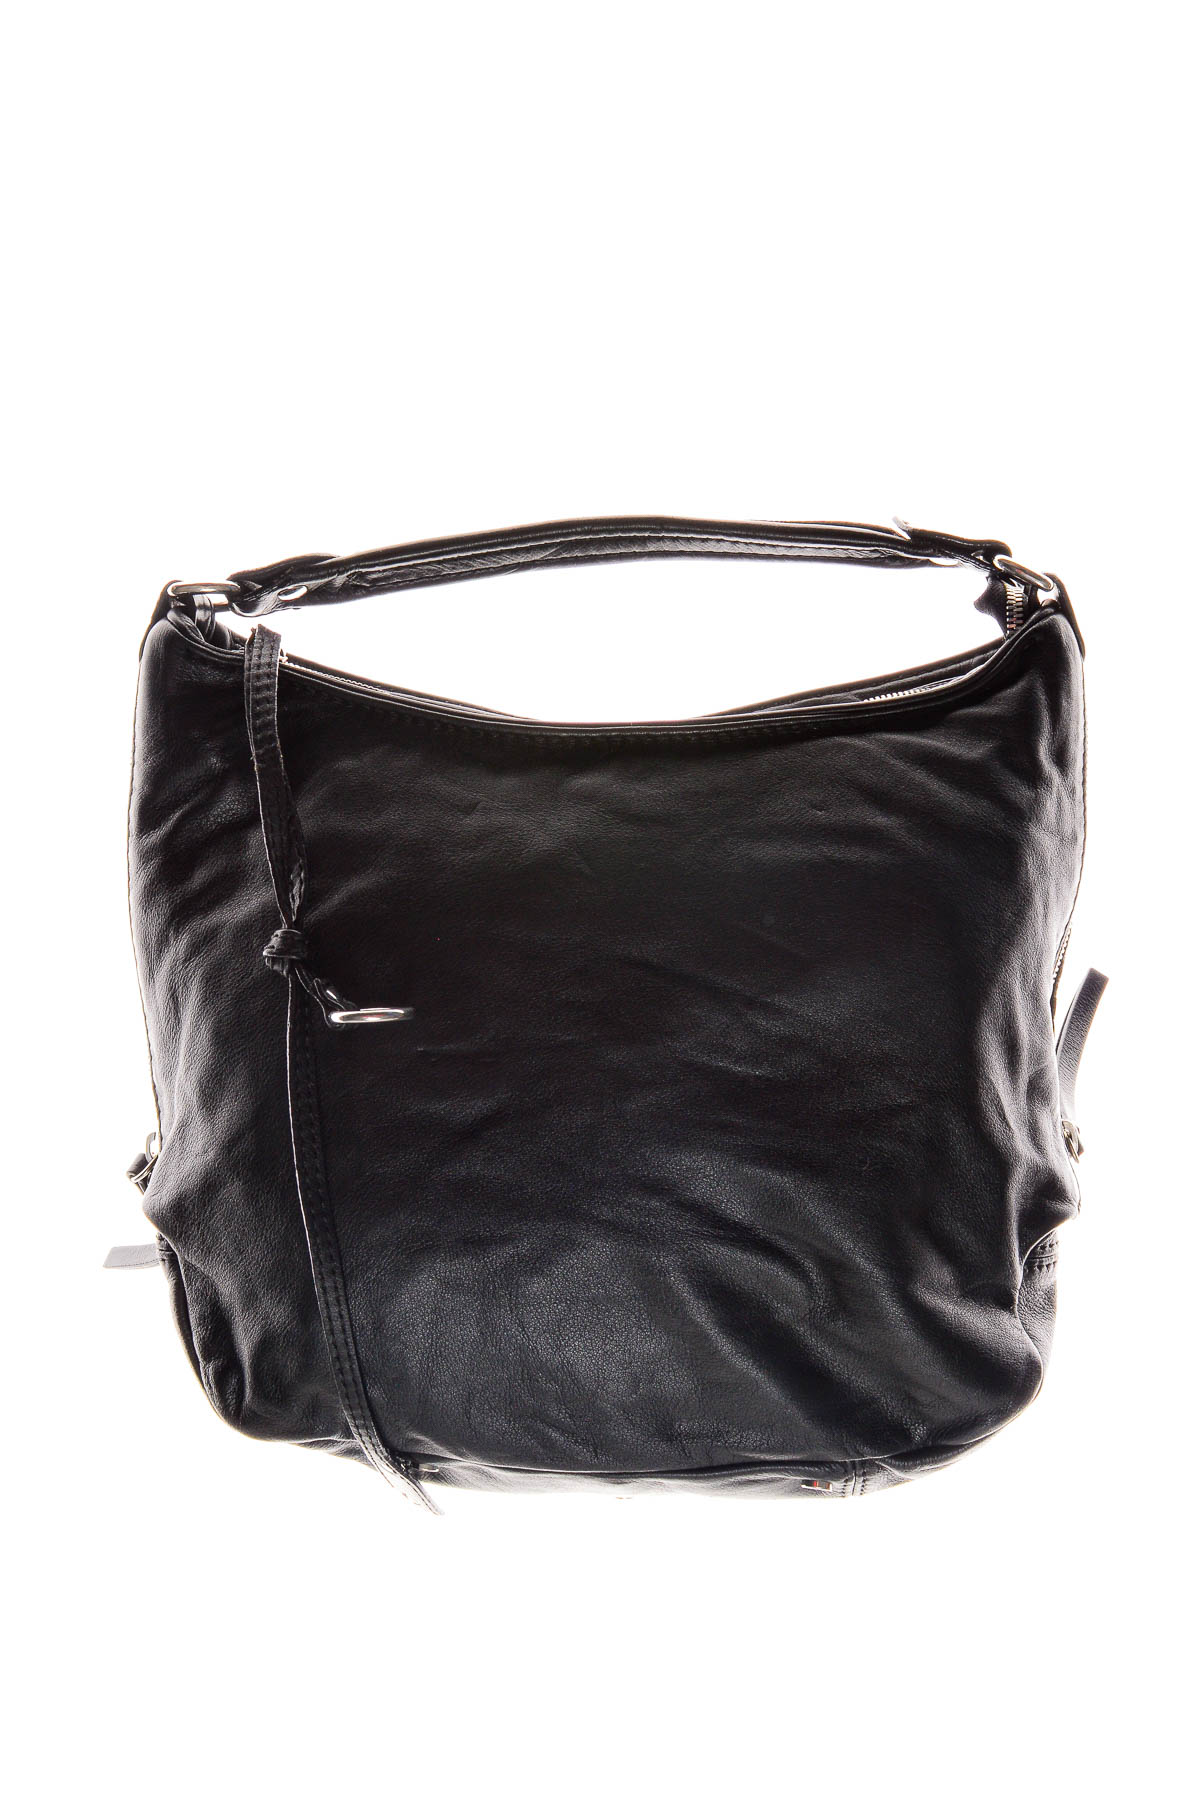 Women's bag - Abro - 0